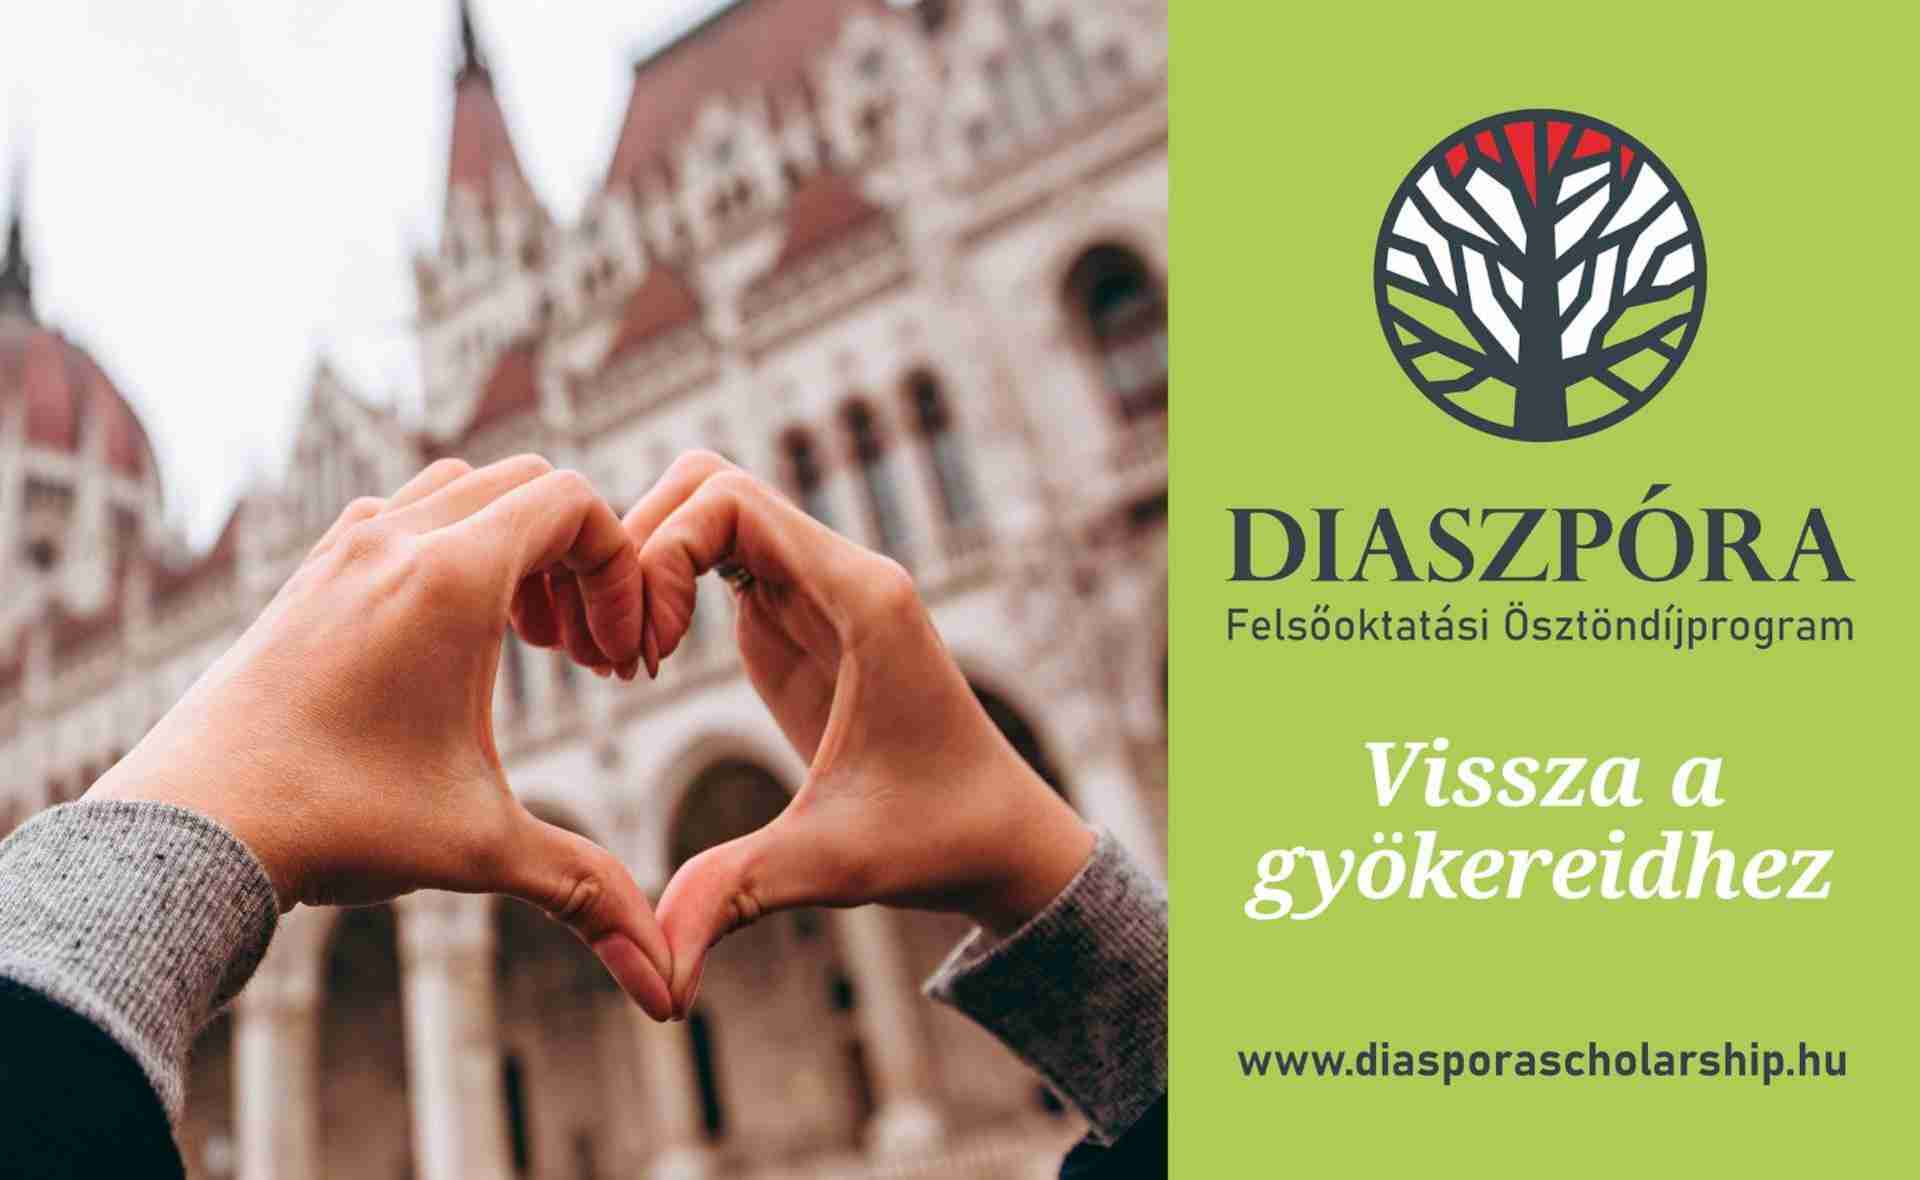 Megnyílt a jelentkezés a Diaszpóra Felsőoktatási Ösztöndíjprogramra